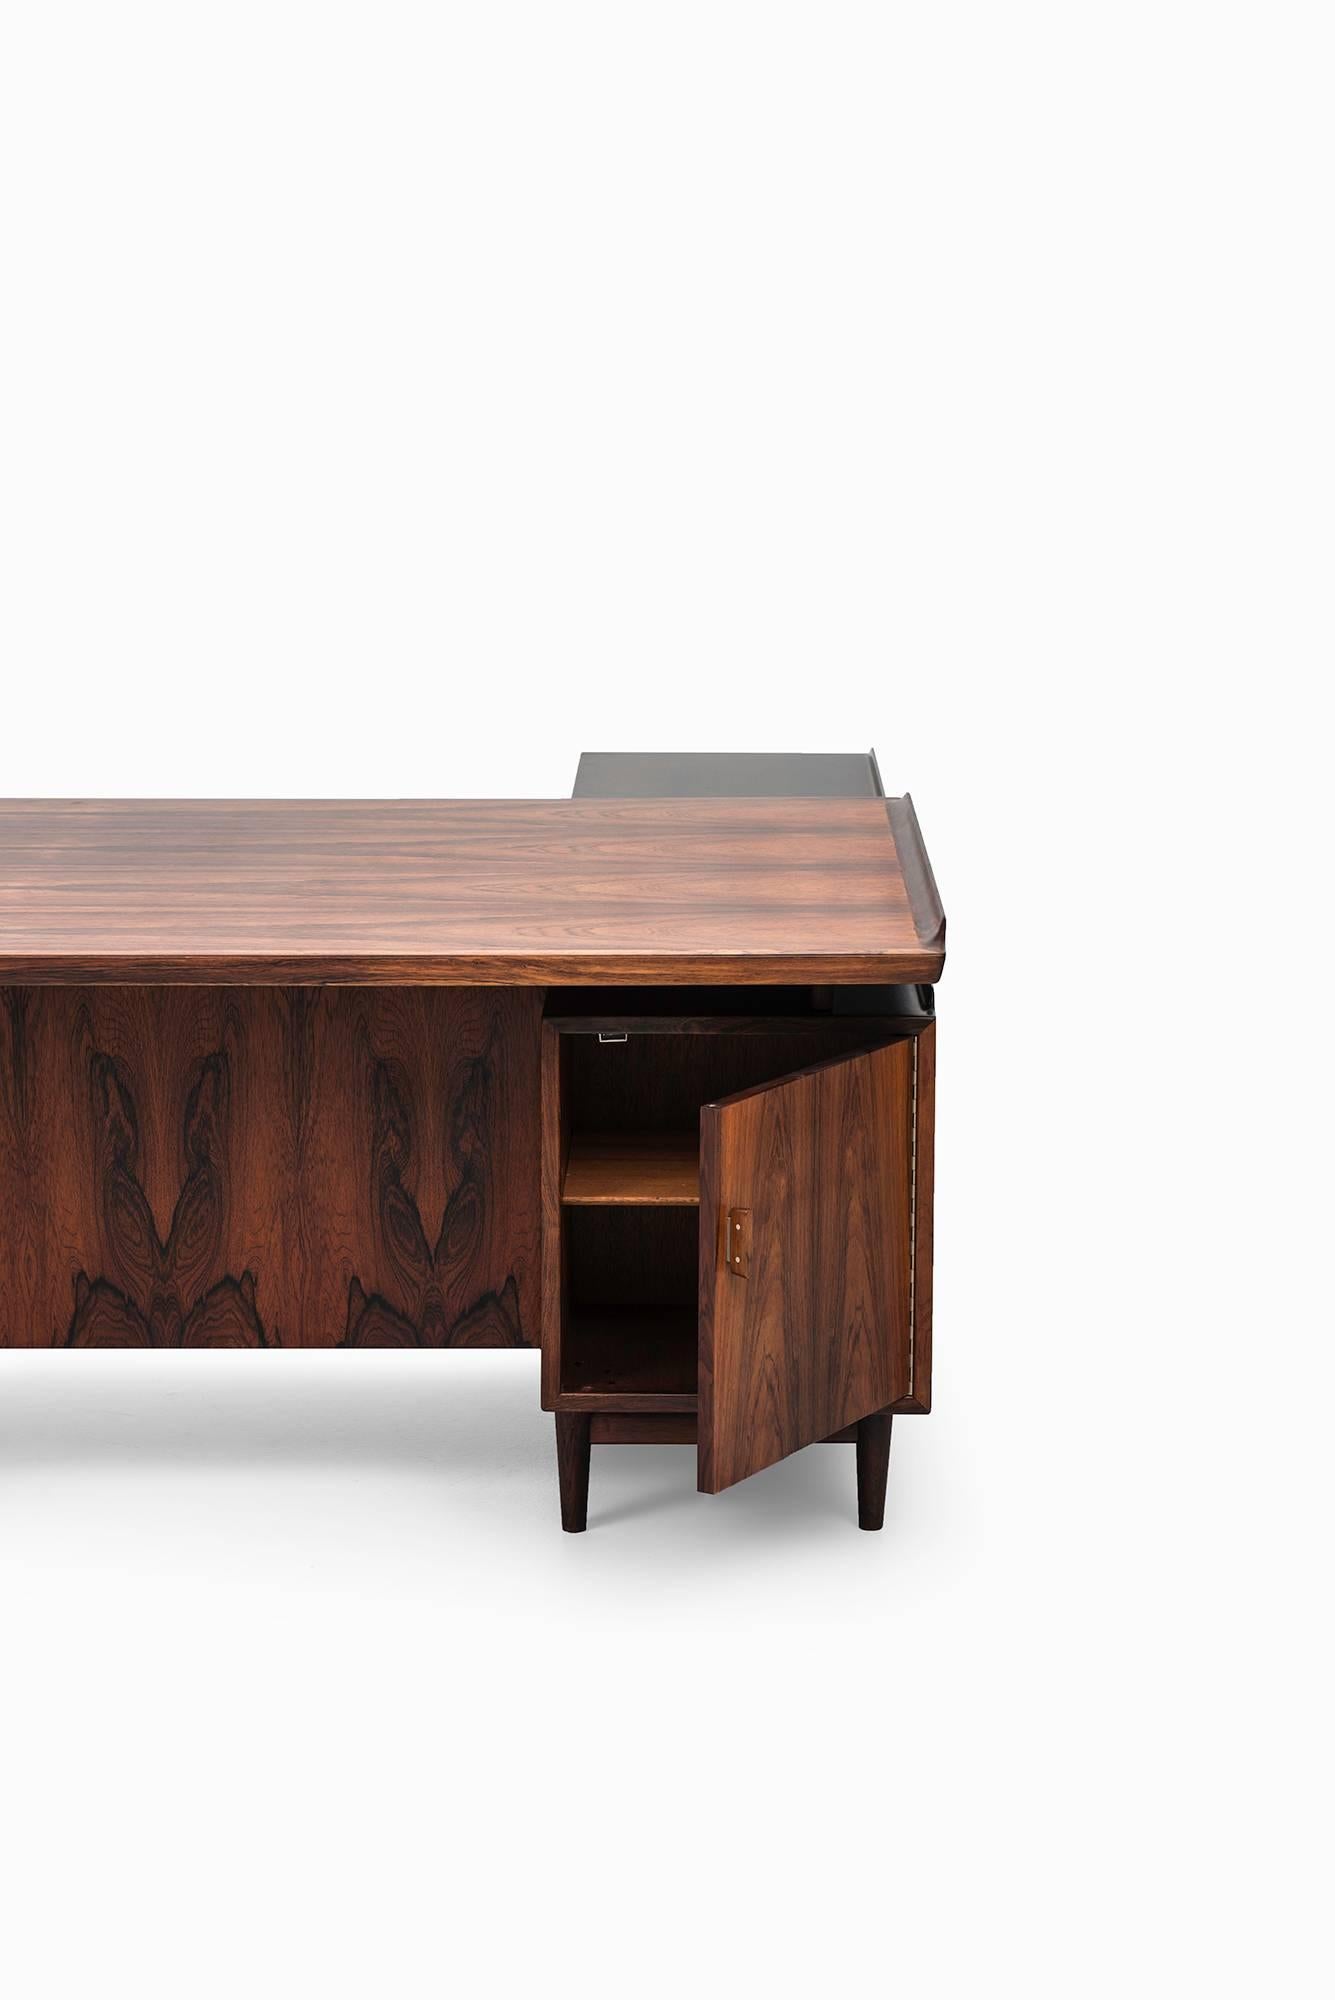 Mid-20th Century Arne Vodder L-shaped desk with sideboard model 209